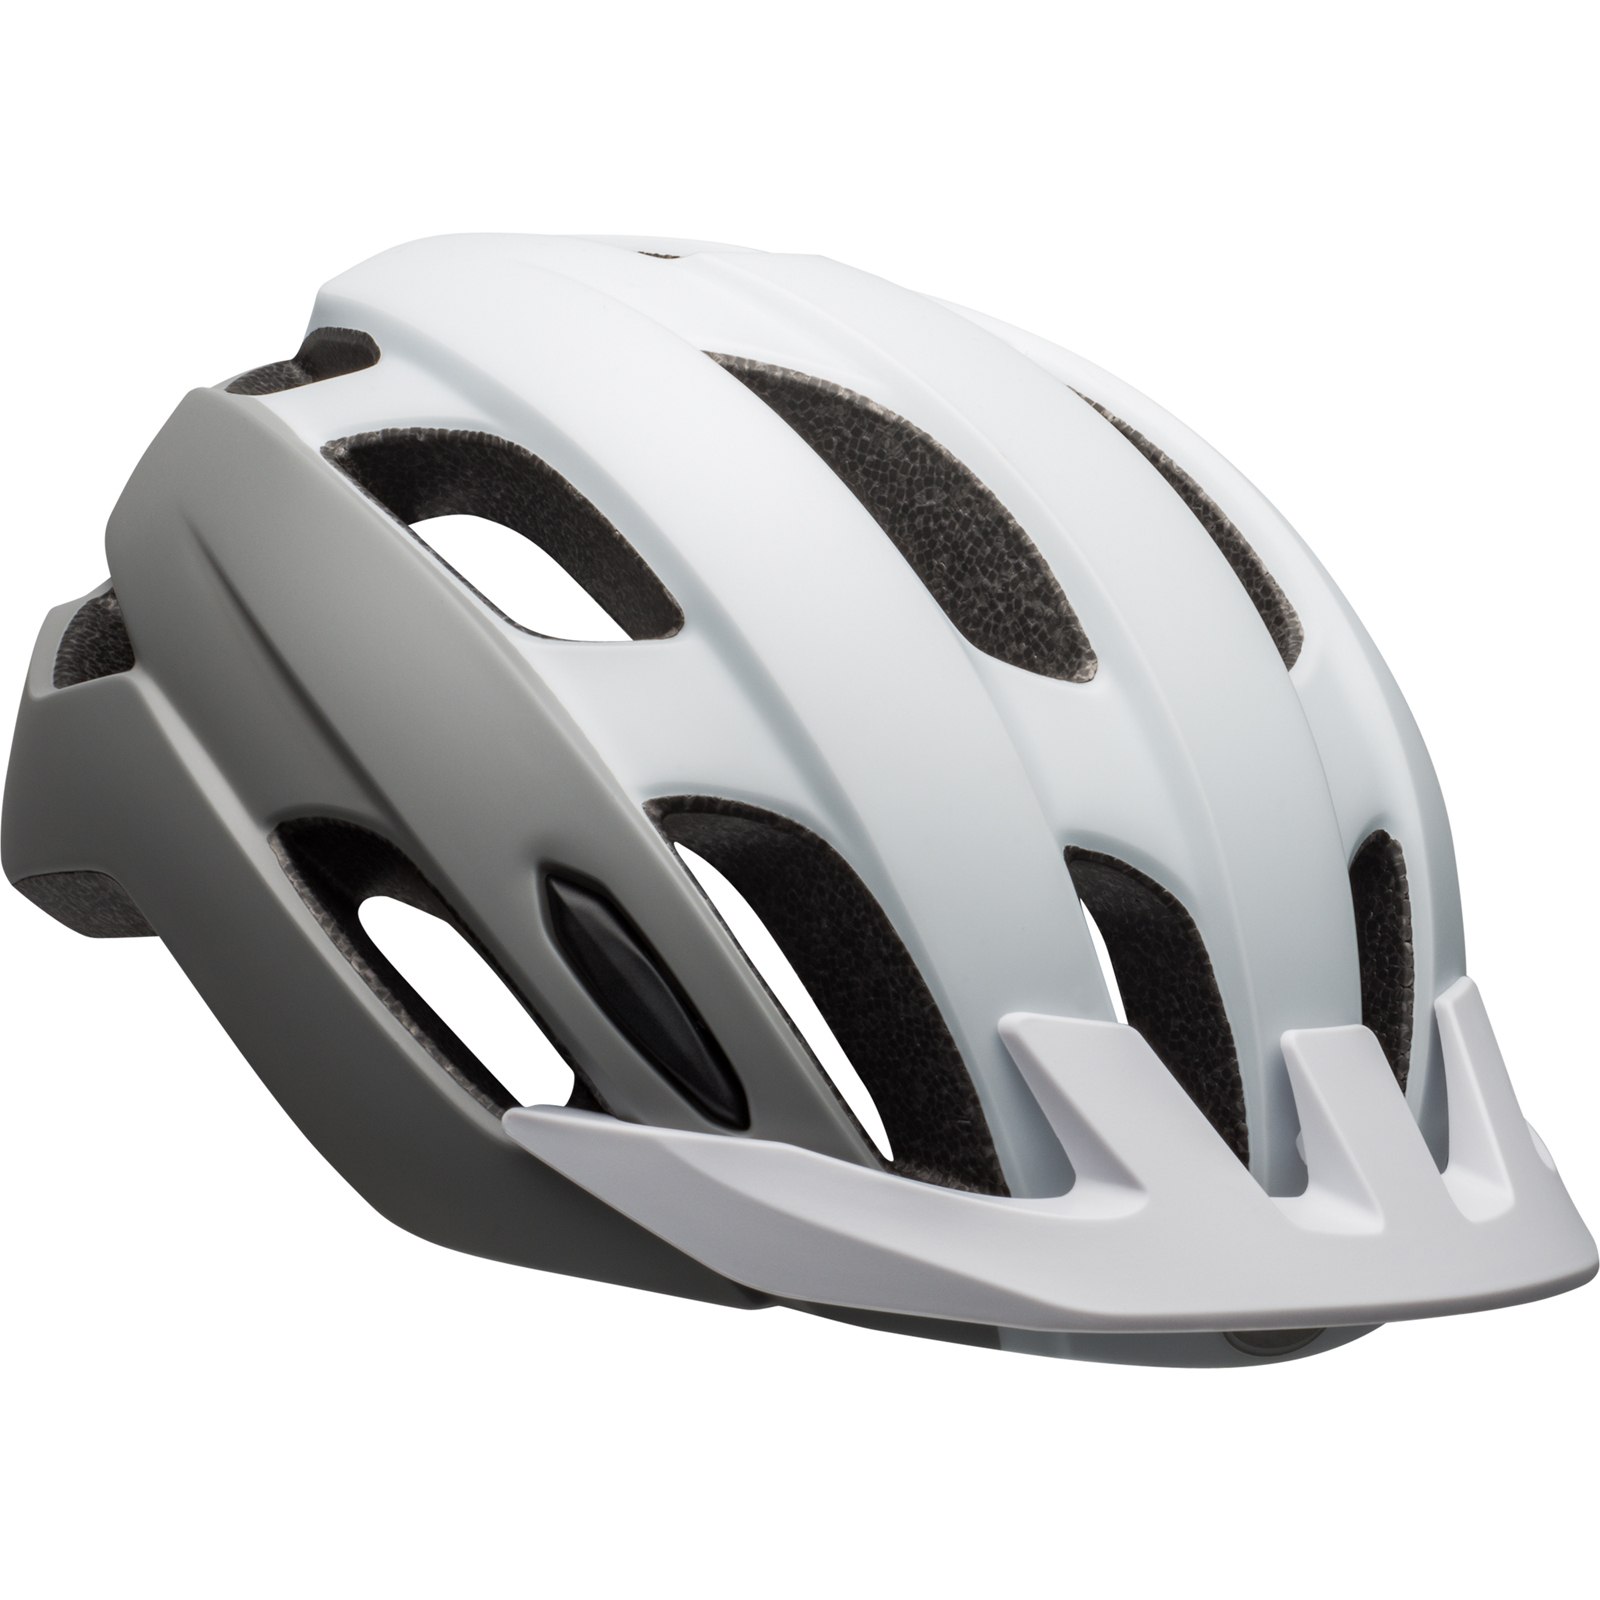 Produktbild von Bell Trace MIPS Helm - matte white/silver